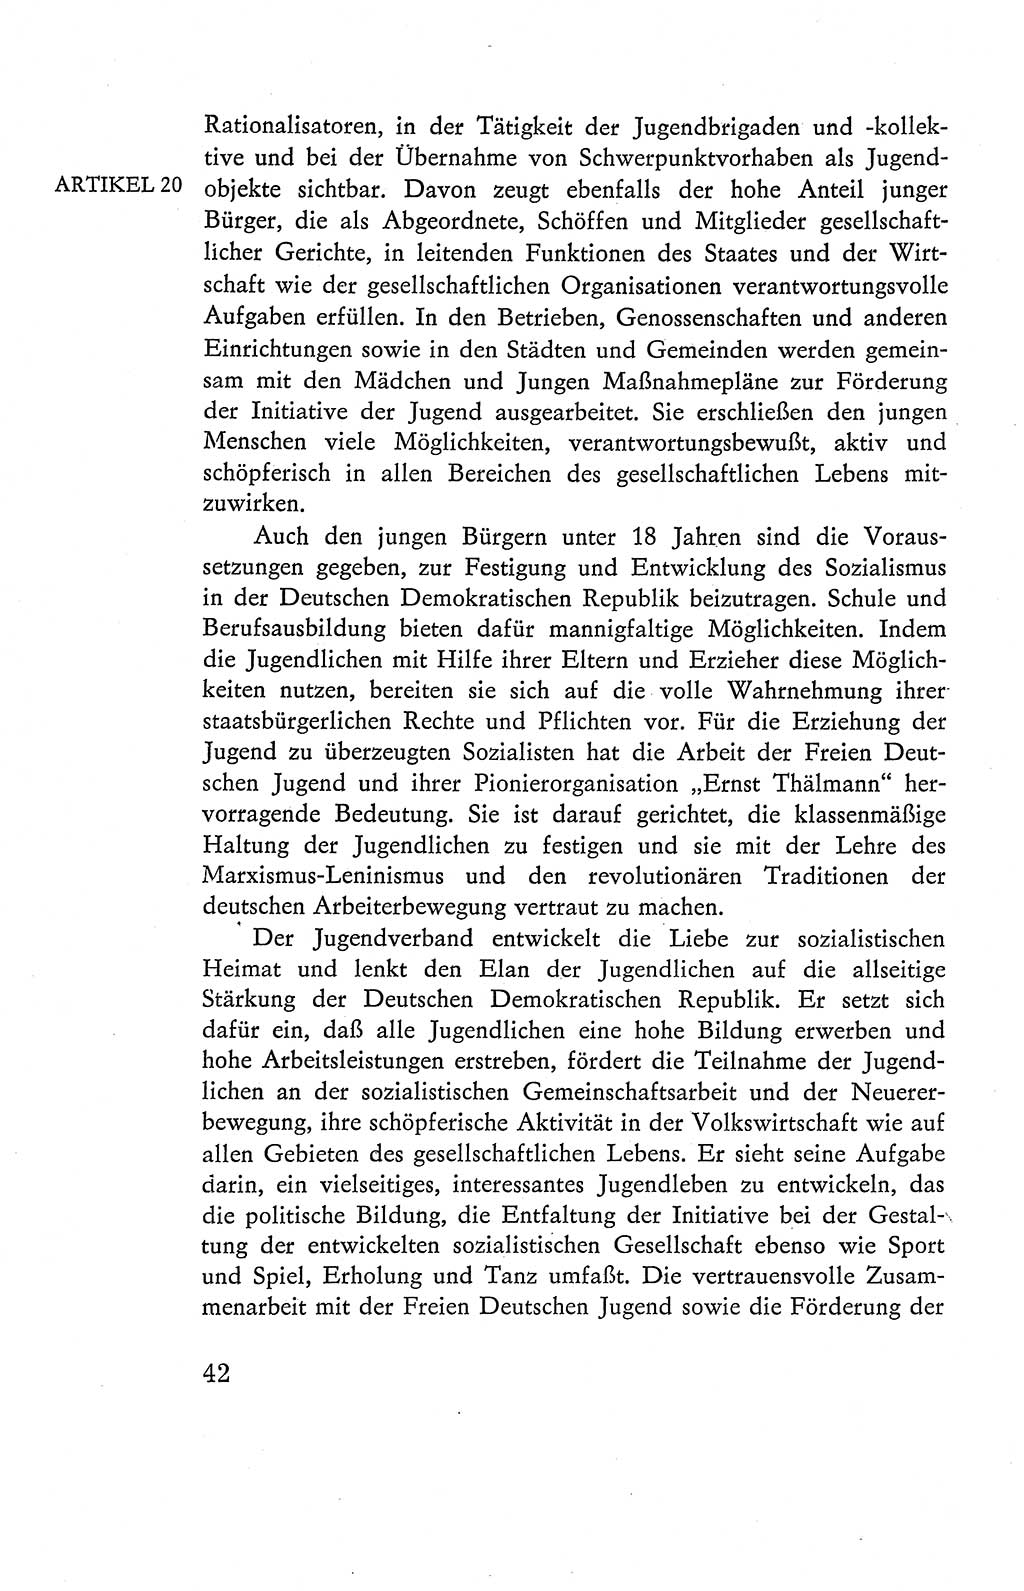 Verfassung der Deutschen Demokratischen Republik (DDR), Dokumente, Kommentar 1969, Band 2, Seite 42 (Verf. DDR Dok. Komm. 1969, Bd. 2, S. 42)